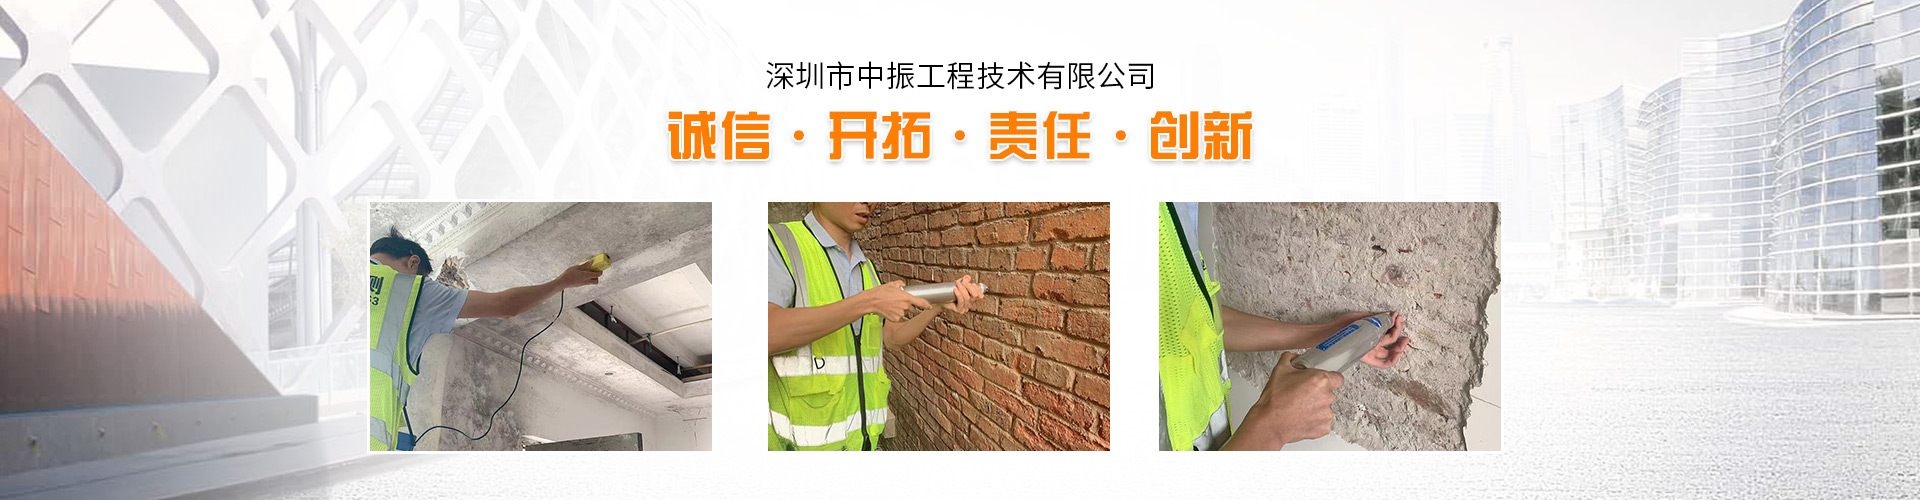 建筑房屋结构安全检测鉴定--深圳建筑房屋检测中心